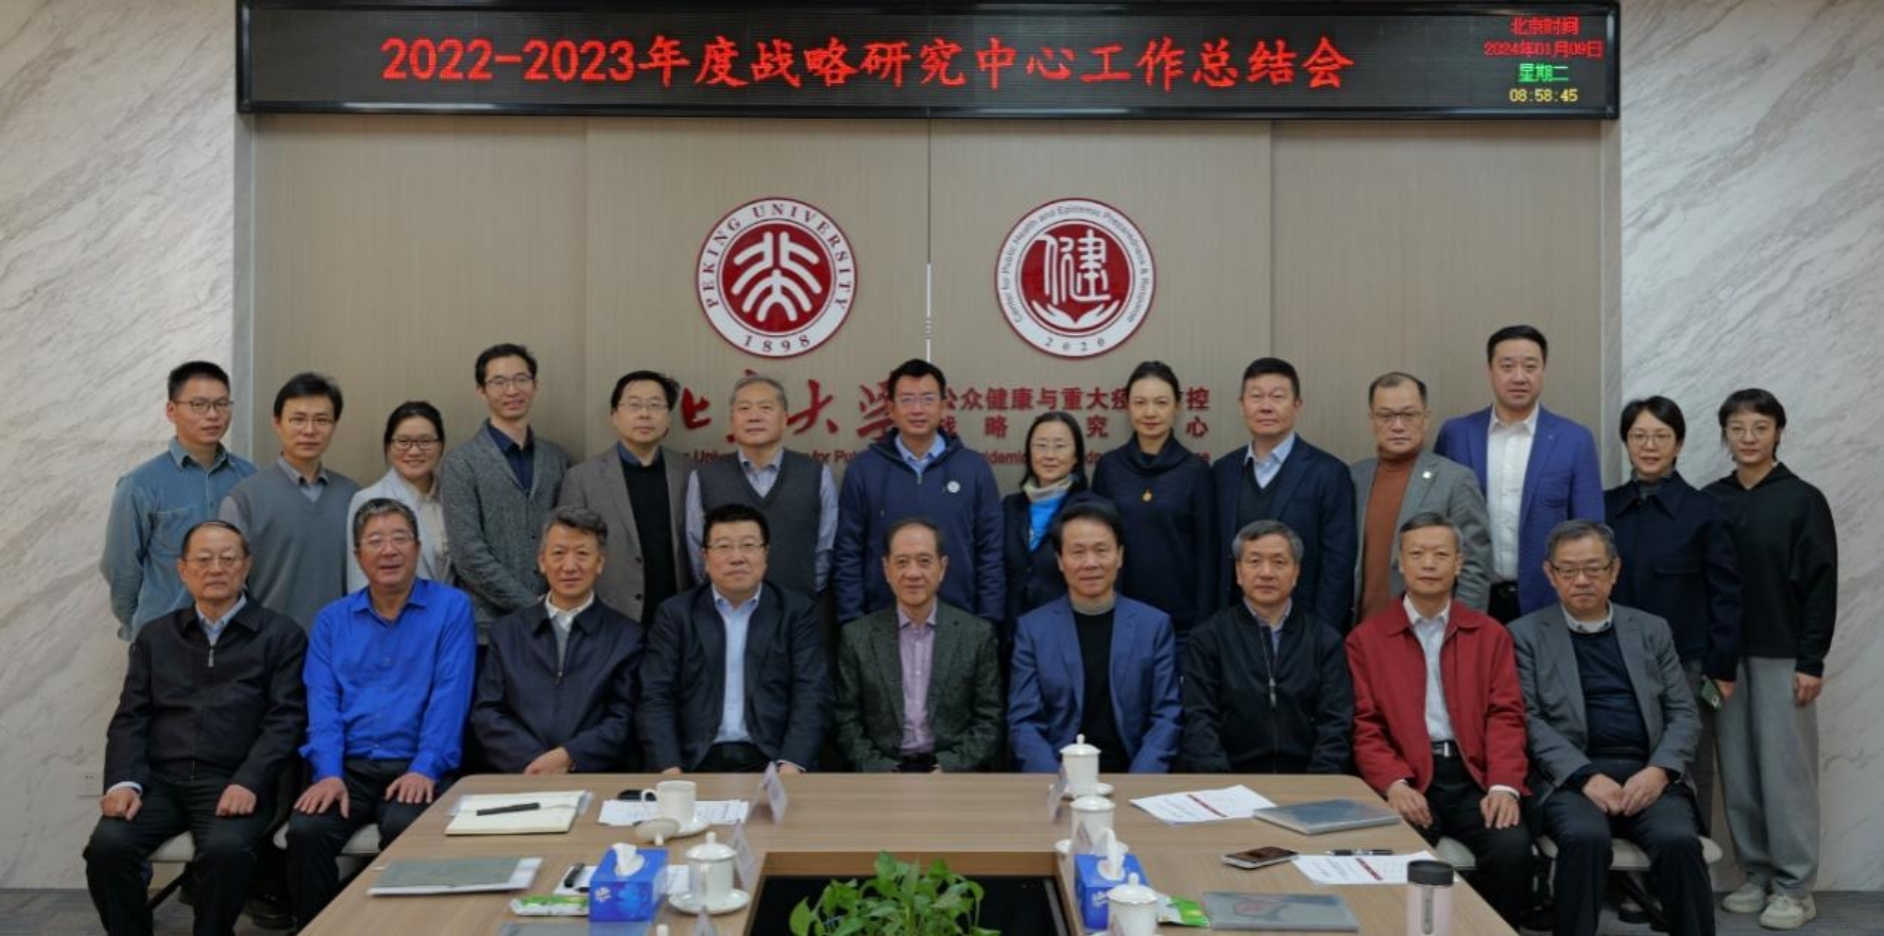 北京大学公众健康与重大疫情防控战略研究中心2022-2023年度工作总结会召开